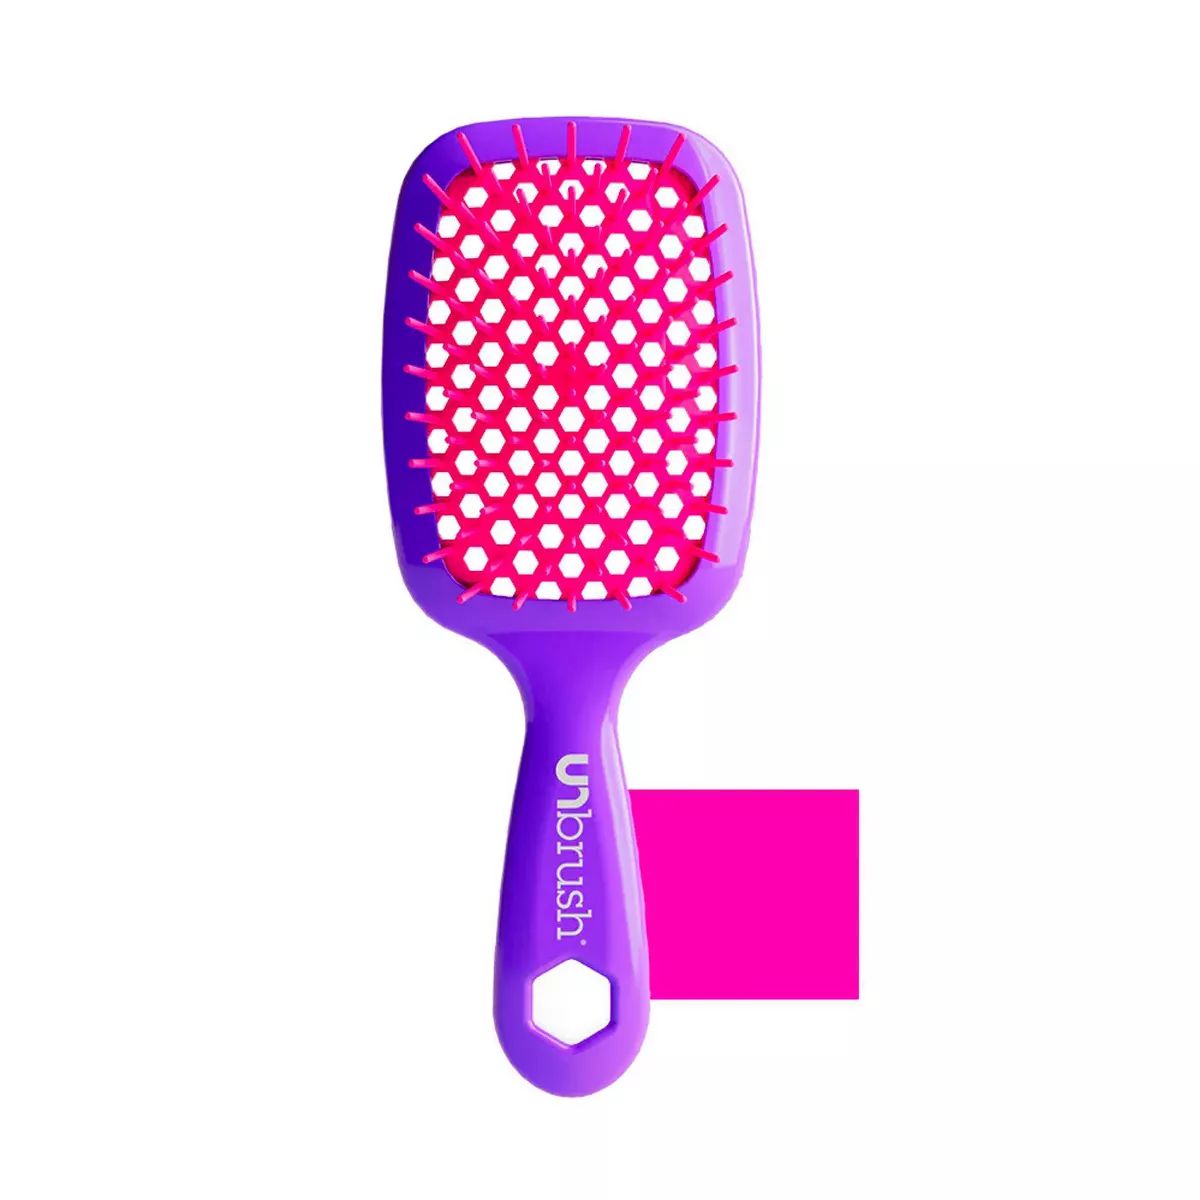 UNbrush Detangler Hair Brush - Peony Light Pink | Target